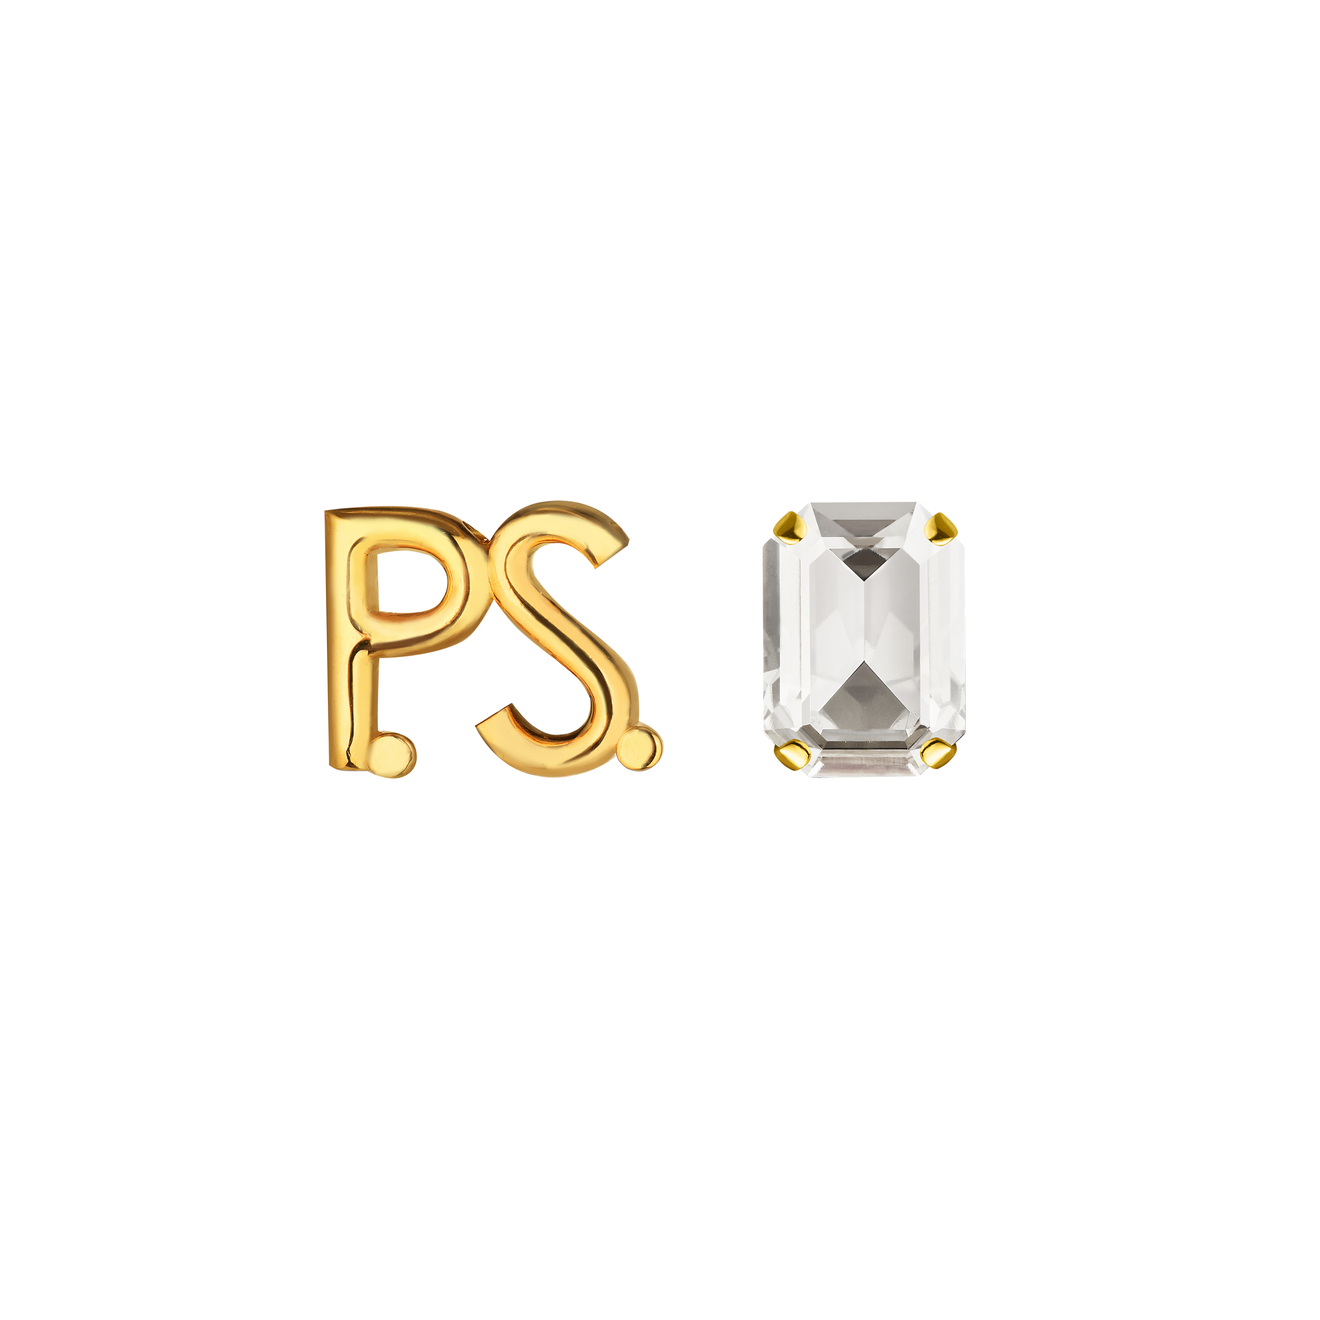 Phenomenal Studio Позолоченные серьги с фирменным логотипом и крупным кристаллом P.S. Crystal Gold phenomenal studio позолоченные серьги кольца с цифрой 7